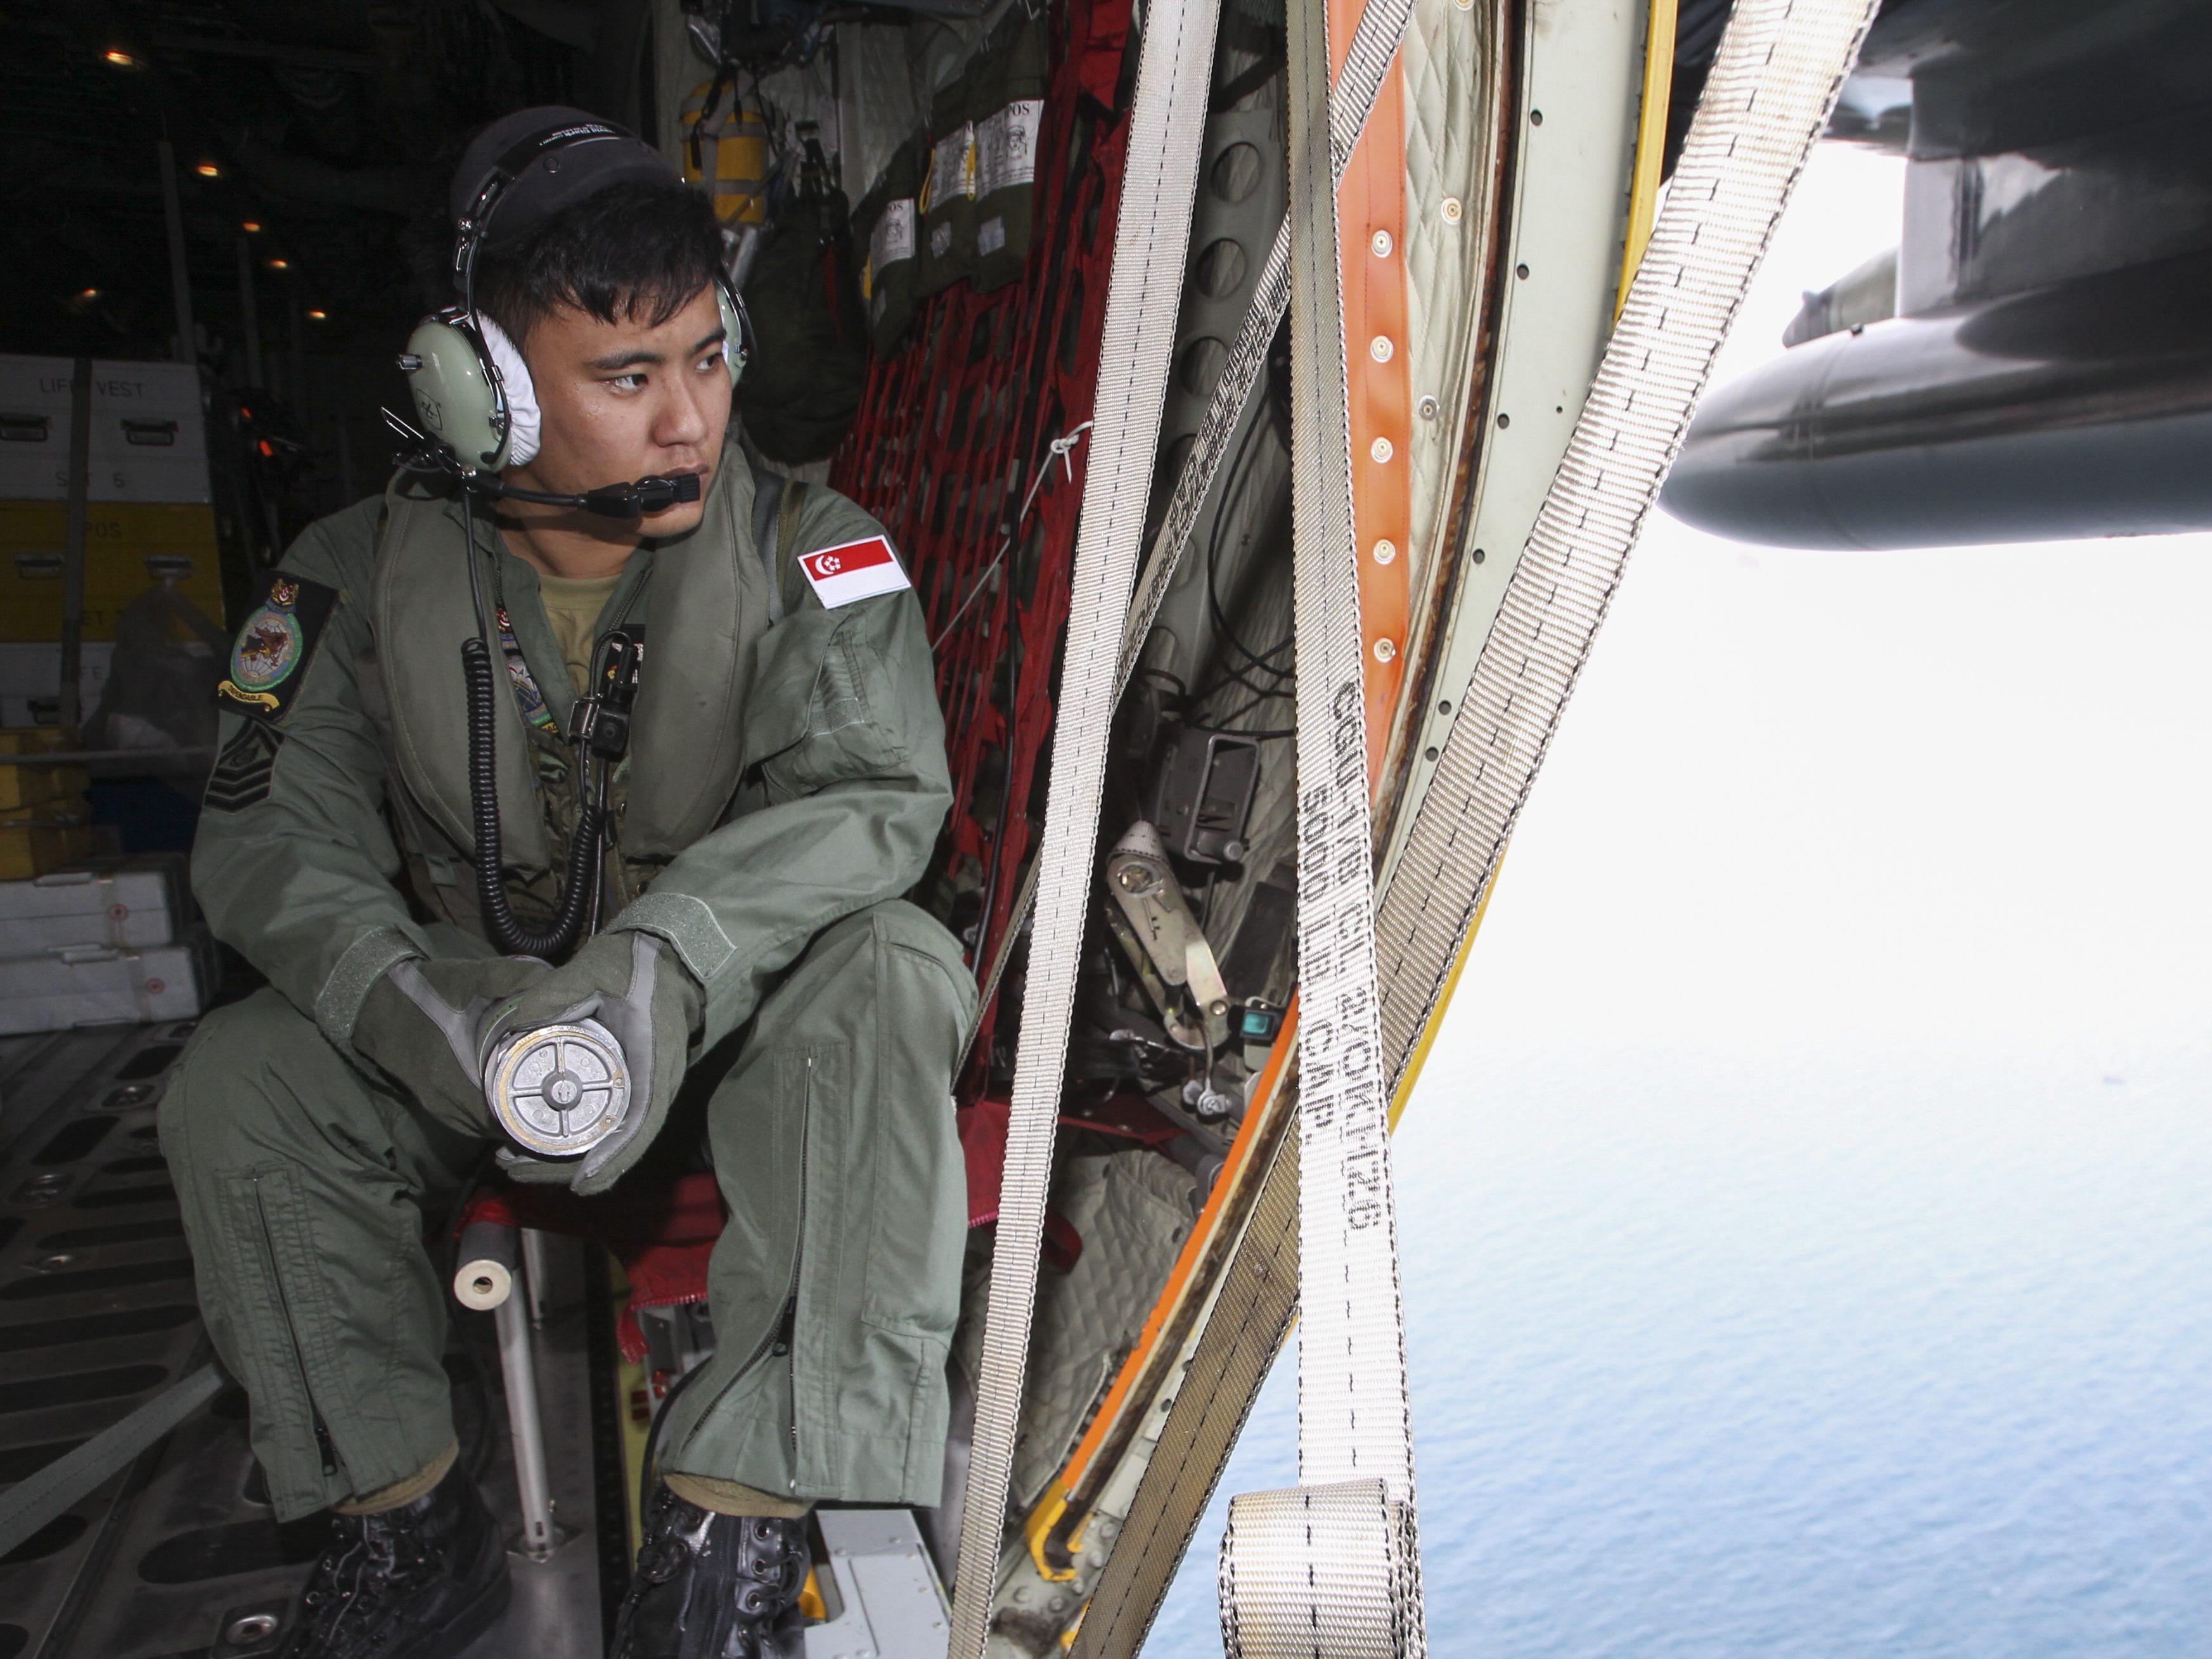 Vater von MH370-Passagier: "Auf unserem Land lastet ein Fluch."